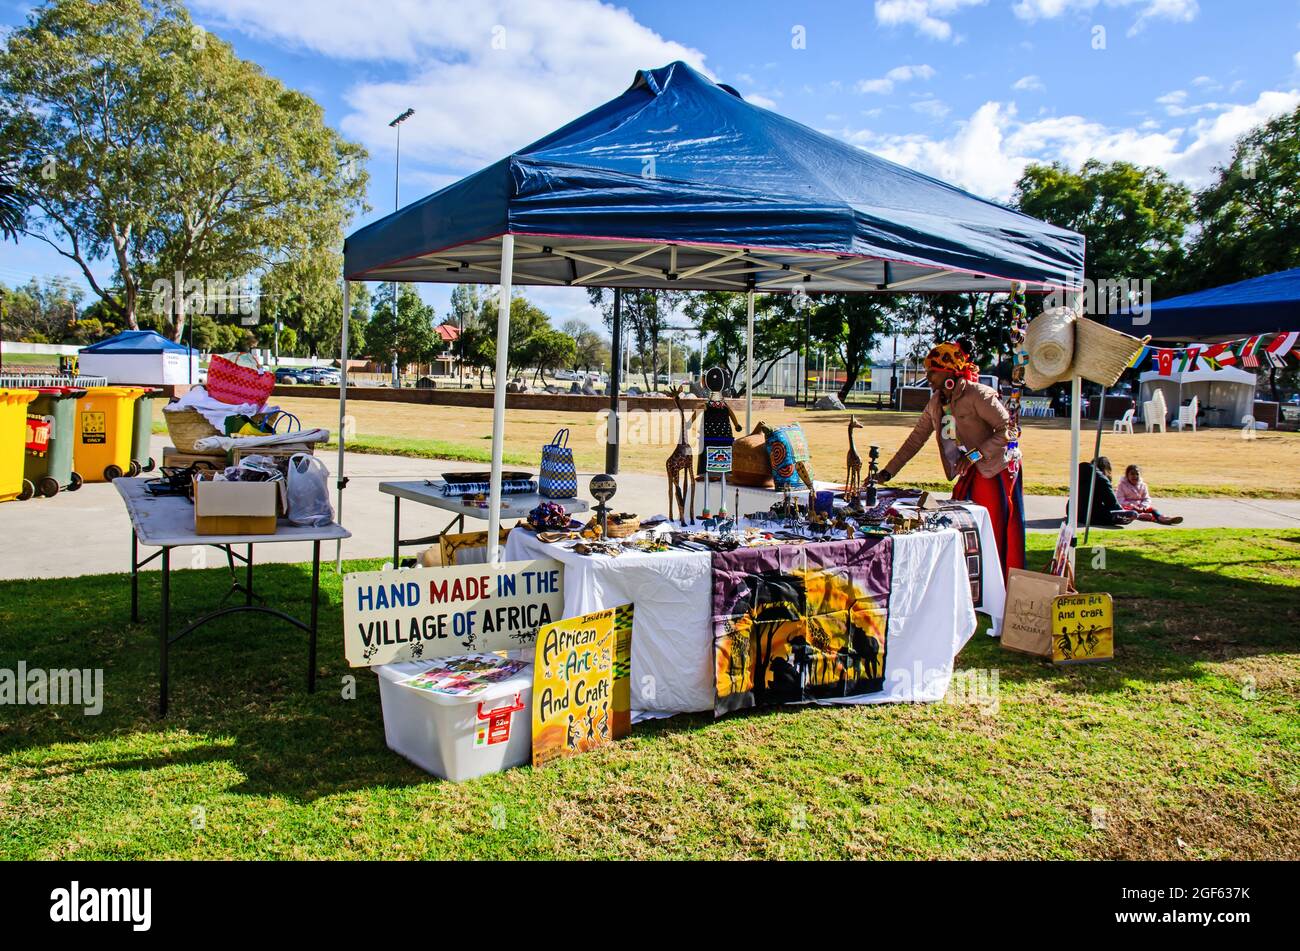 Einrichtung eines Verkaufsstandes für afrikanische Kunst und Kunsthandwerk beim Multikulturellen Festival von Tamworth, Australien. Stockfoto